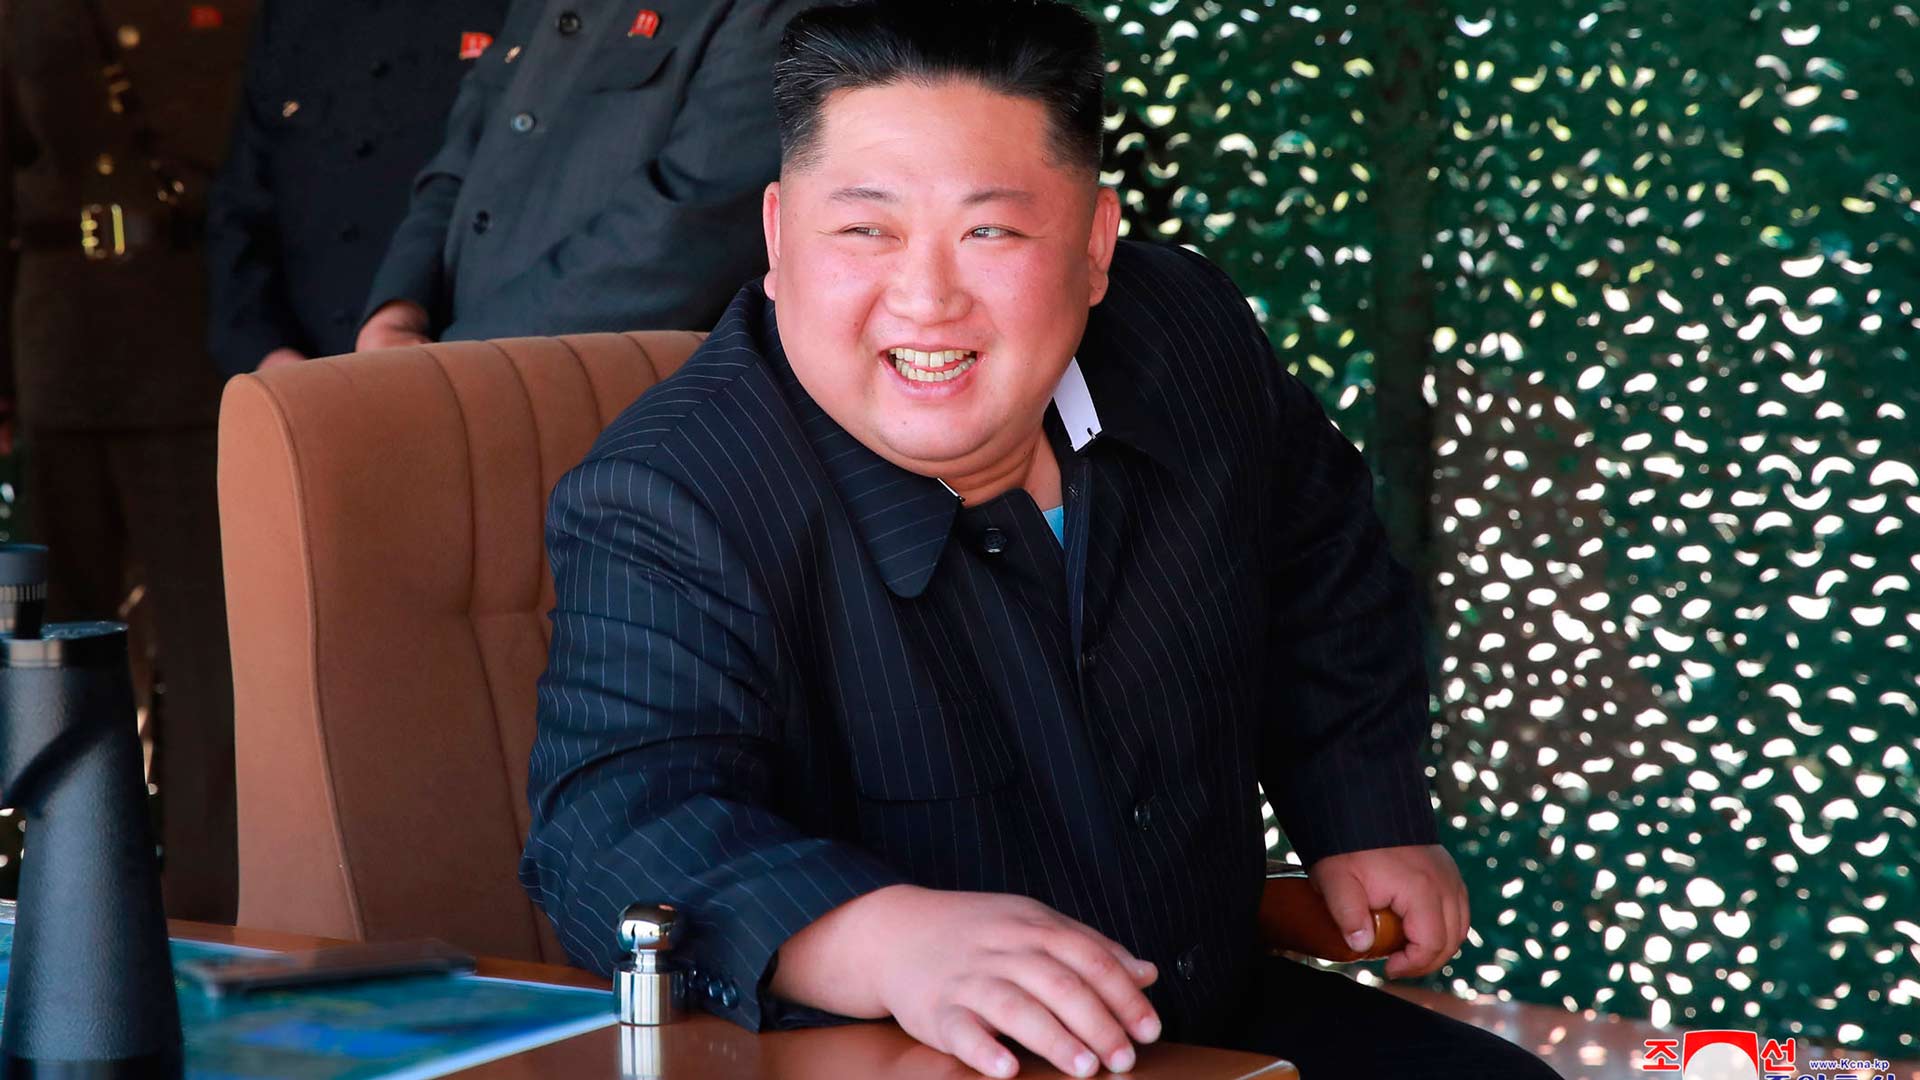 Corea del Norte suspende su gimnasia masiva por el enfado de Kim Jong-un